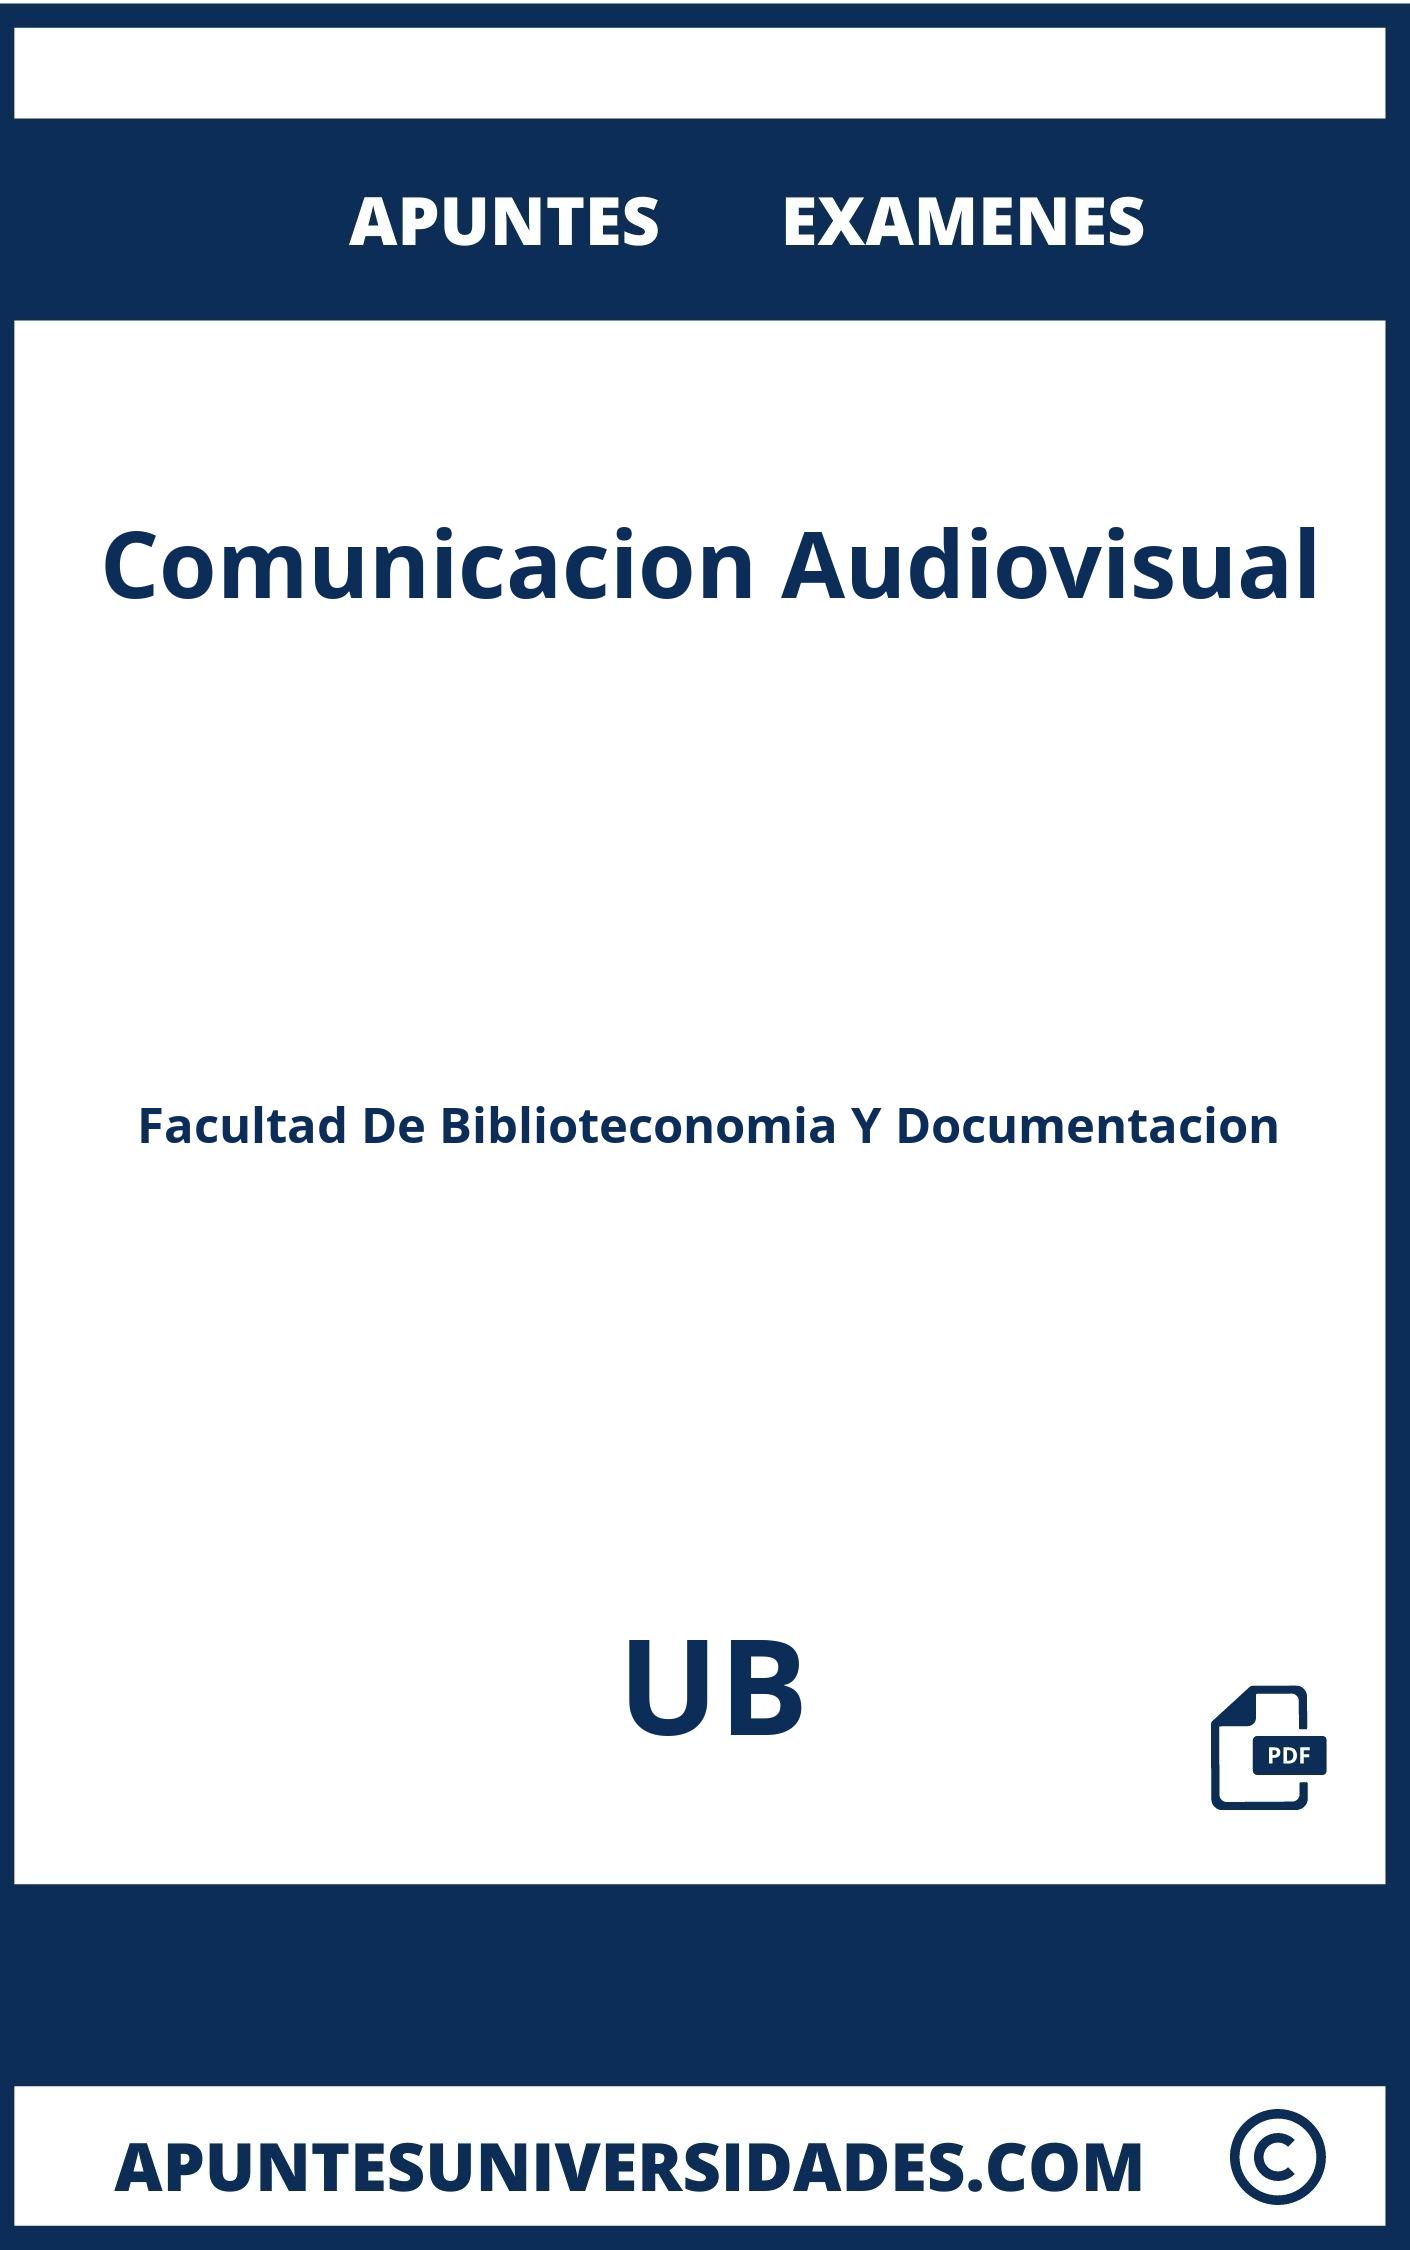 Examenes Comunicacion Audiovisual UB y Apuntes